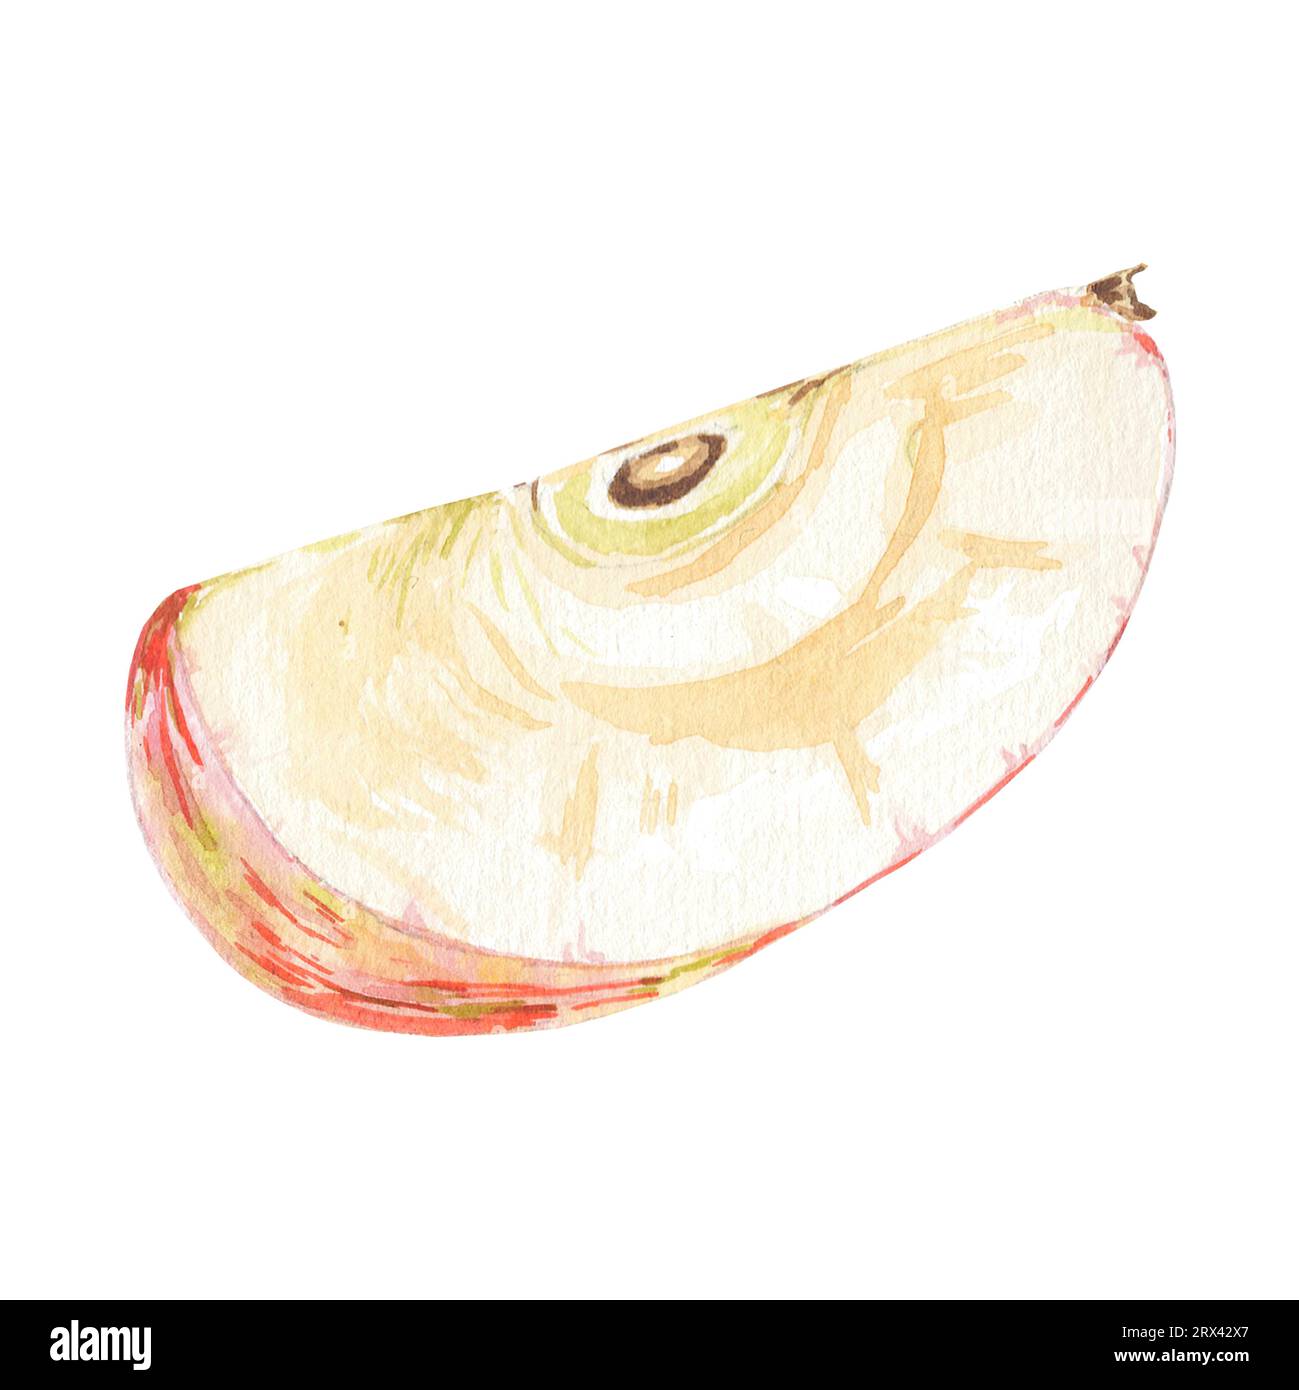 Aquarellrot eine halbe Apfelscheibe isolierte Illustration auf weißem Hintergrund. Herbstfrucht für Logo, Menü, Poster, Muster. Kunst für Design. Gesund Stockfoto